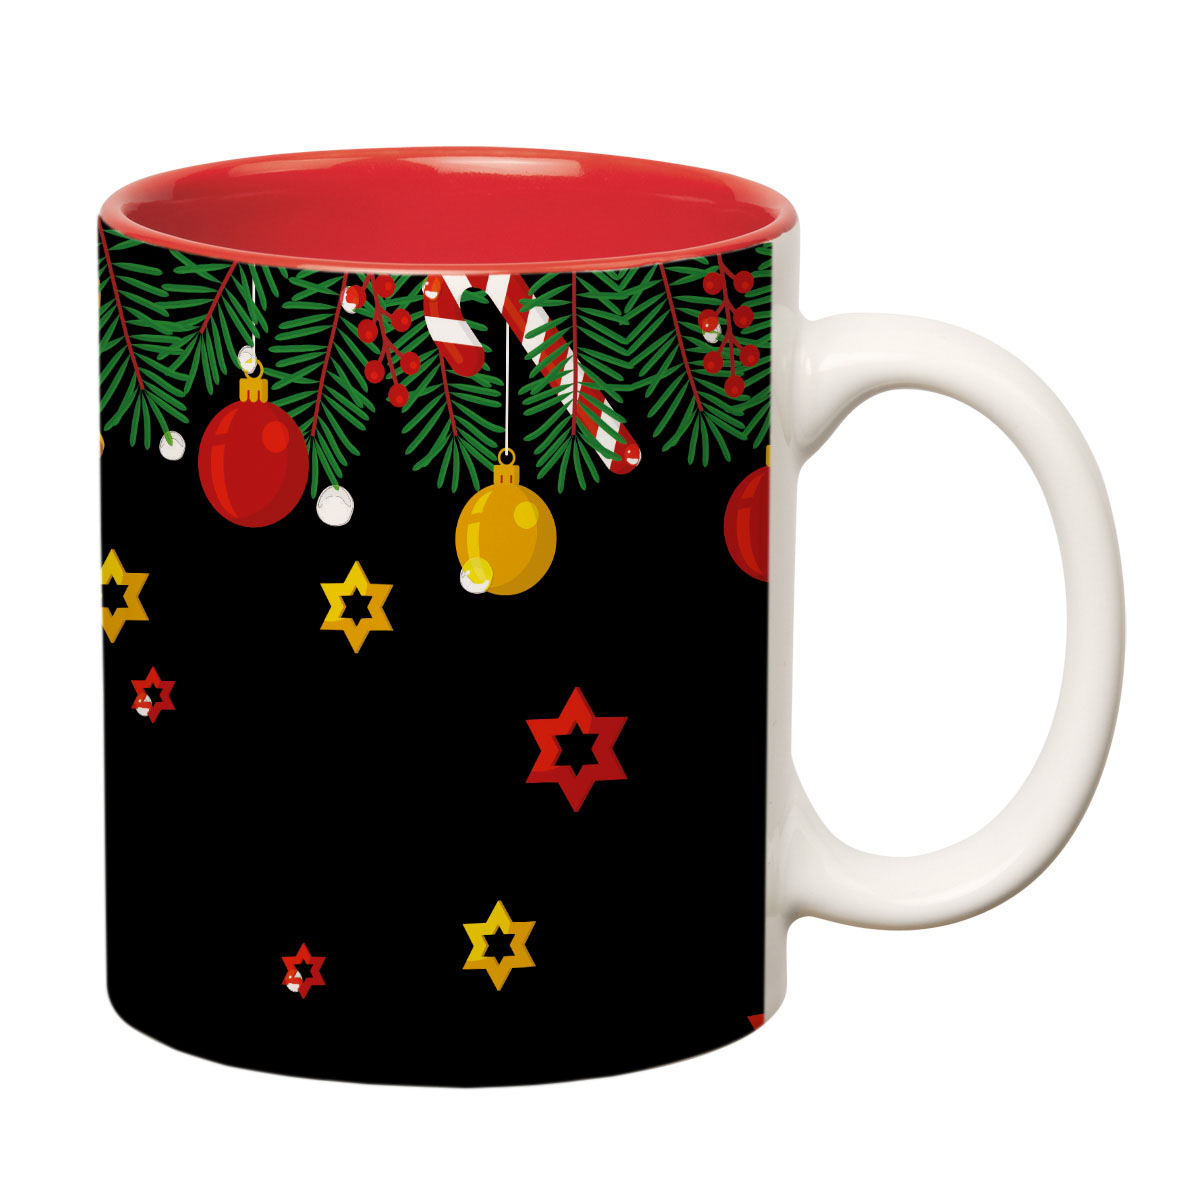 ORKA Coffee Mug 3 Christmas Theme 11 Oz   